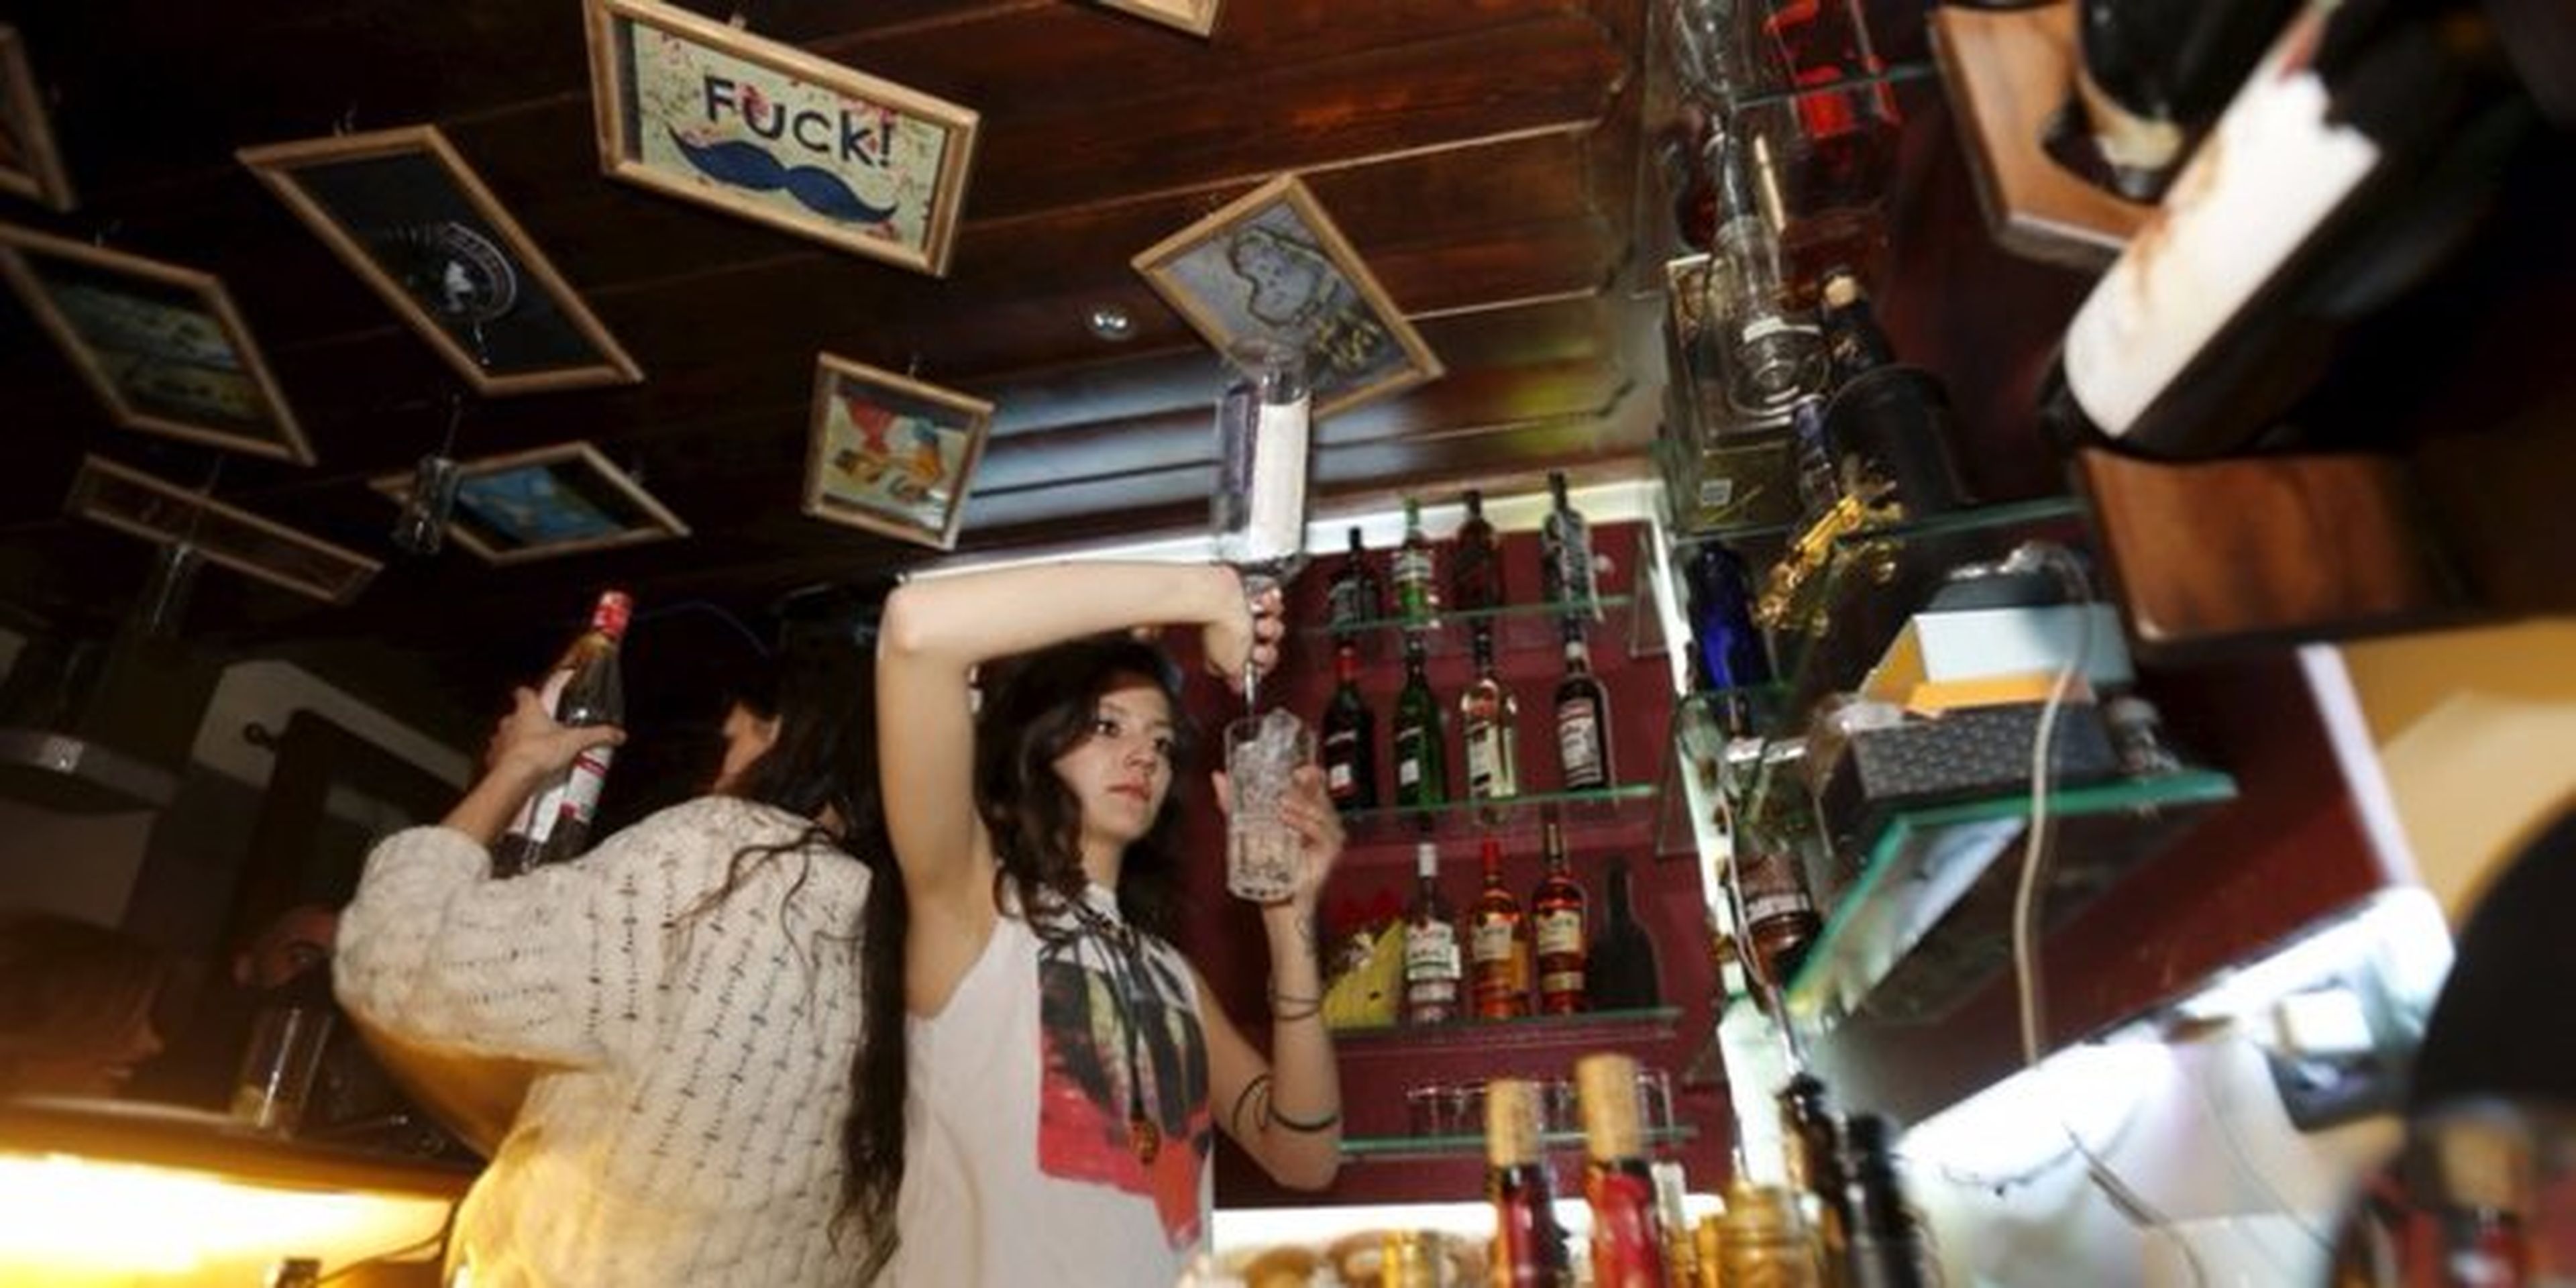 camareros sirviendo bebidas en un bar